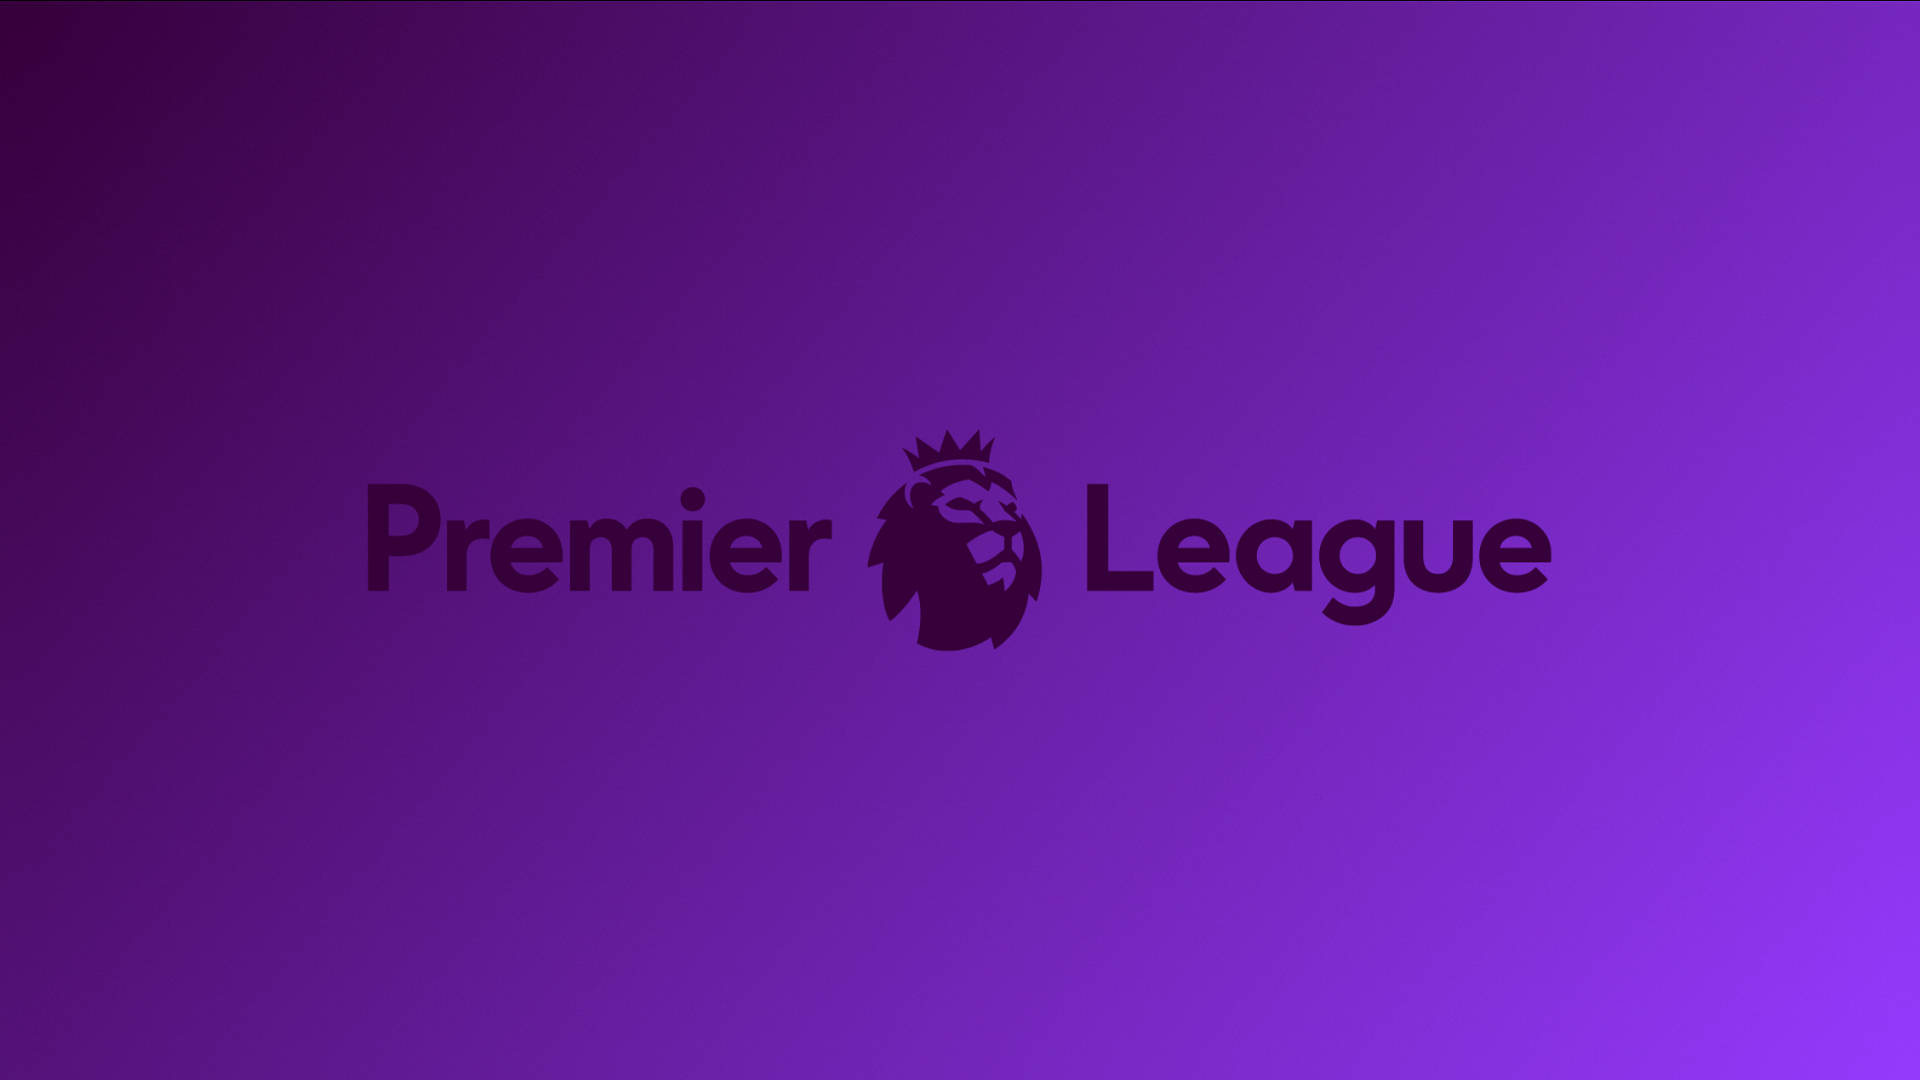 Premier League In Purple